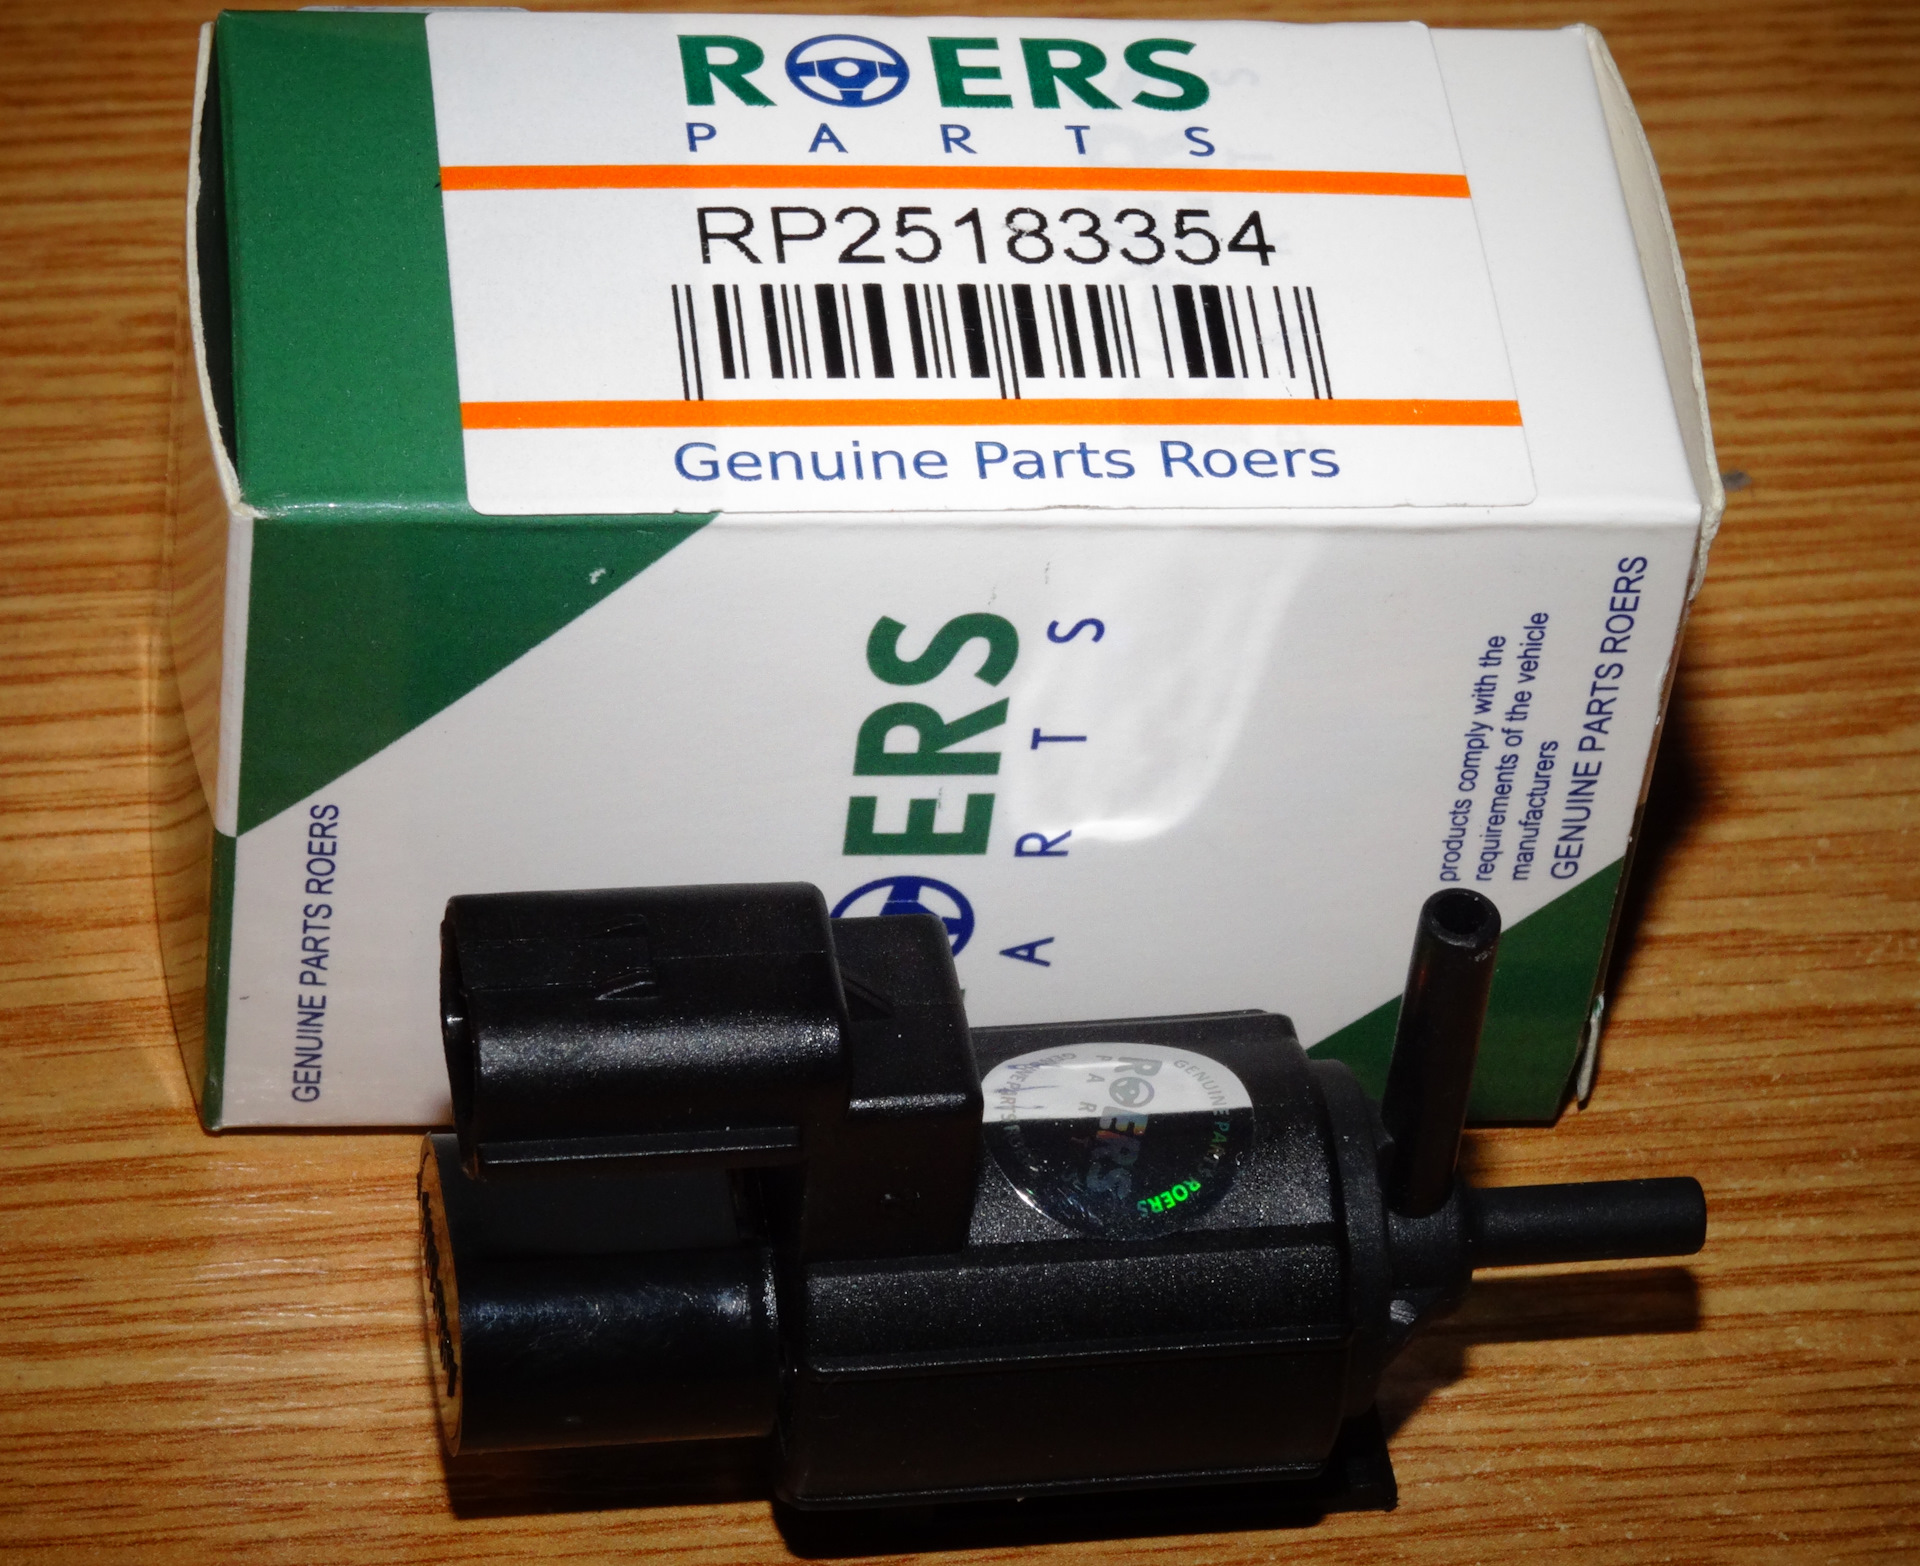 Roers parts производитель. Электромагнитный клапан 25183354 вакуумной. Roers Parts rp28hp012. Roers Parts rp1k0201801e. General Motors 25183354.